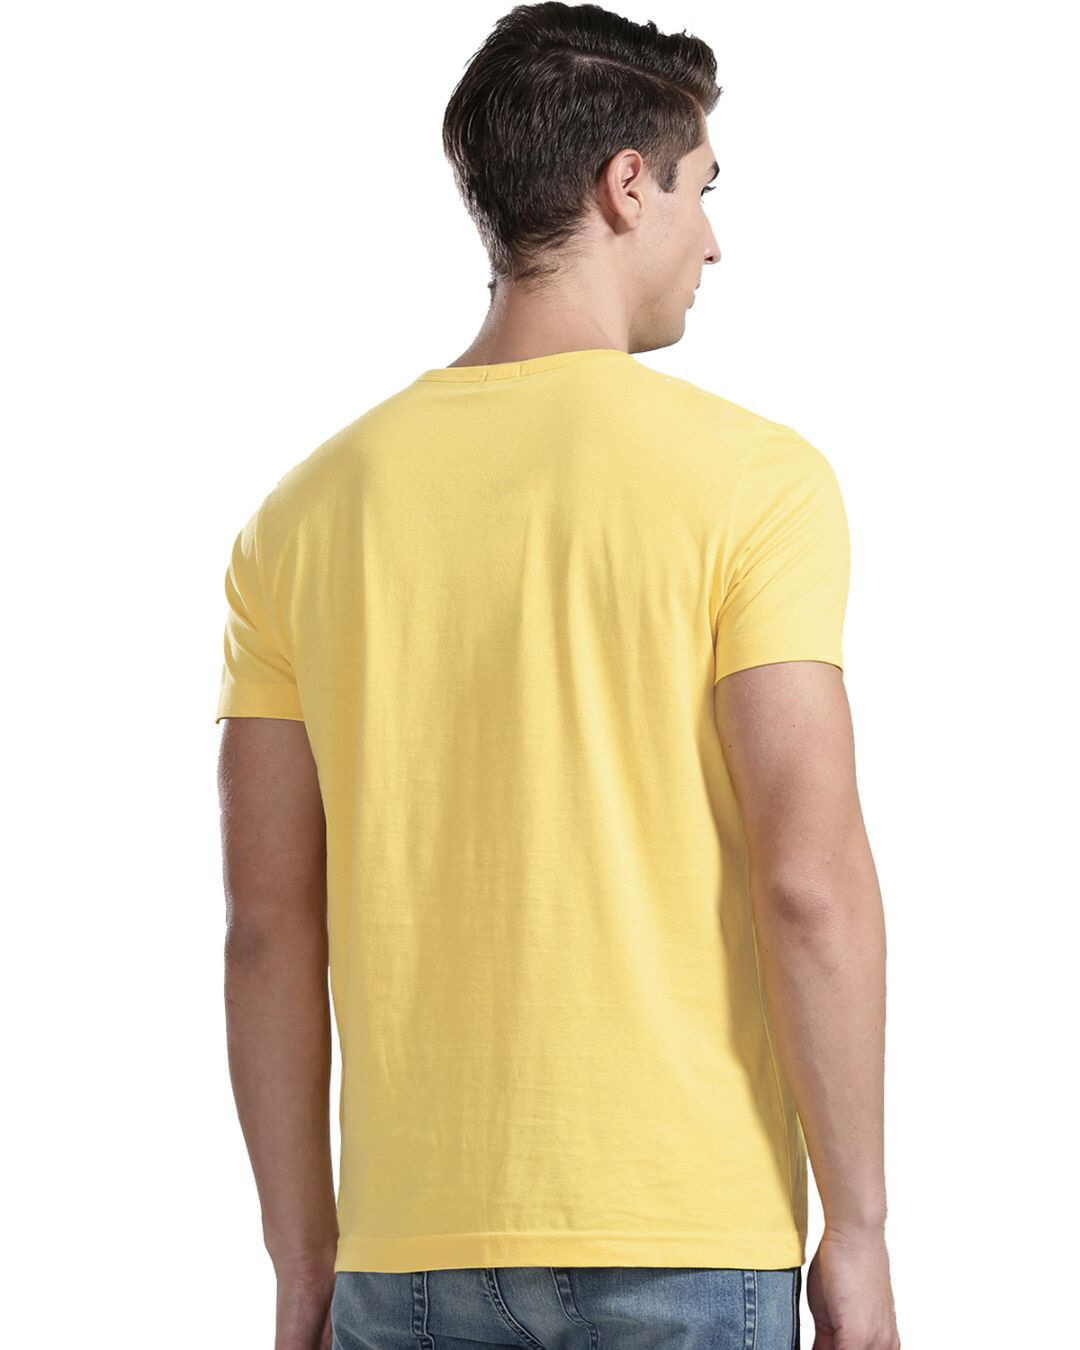 Shop Naver Give Up Design Printed T-shirt for Men's-Back